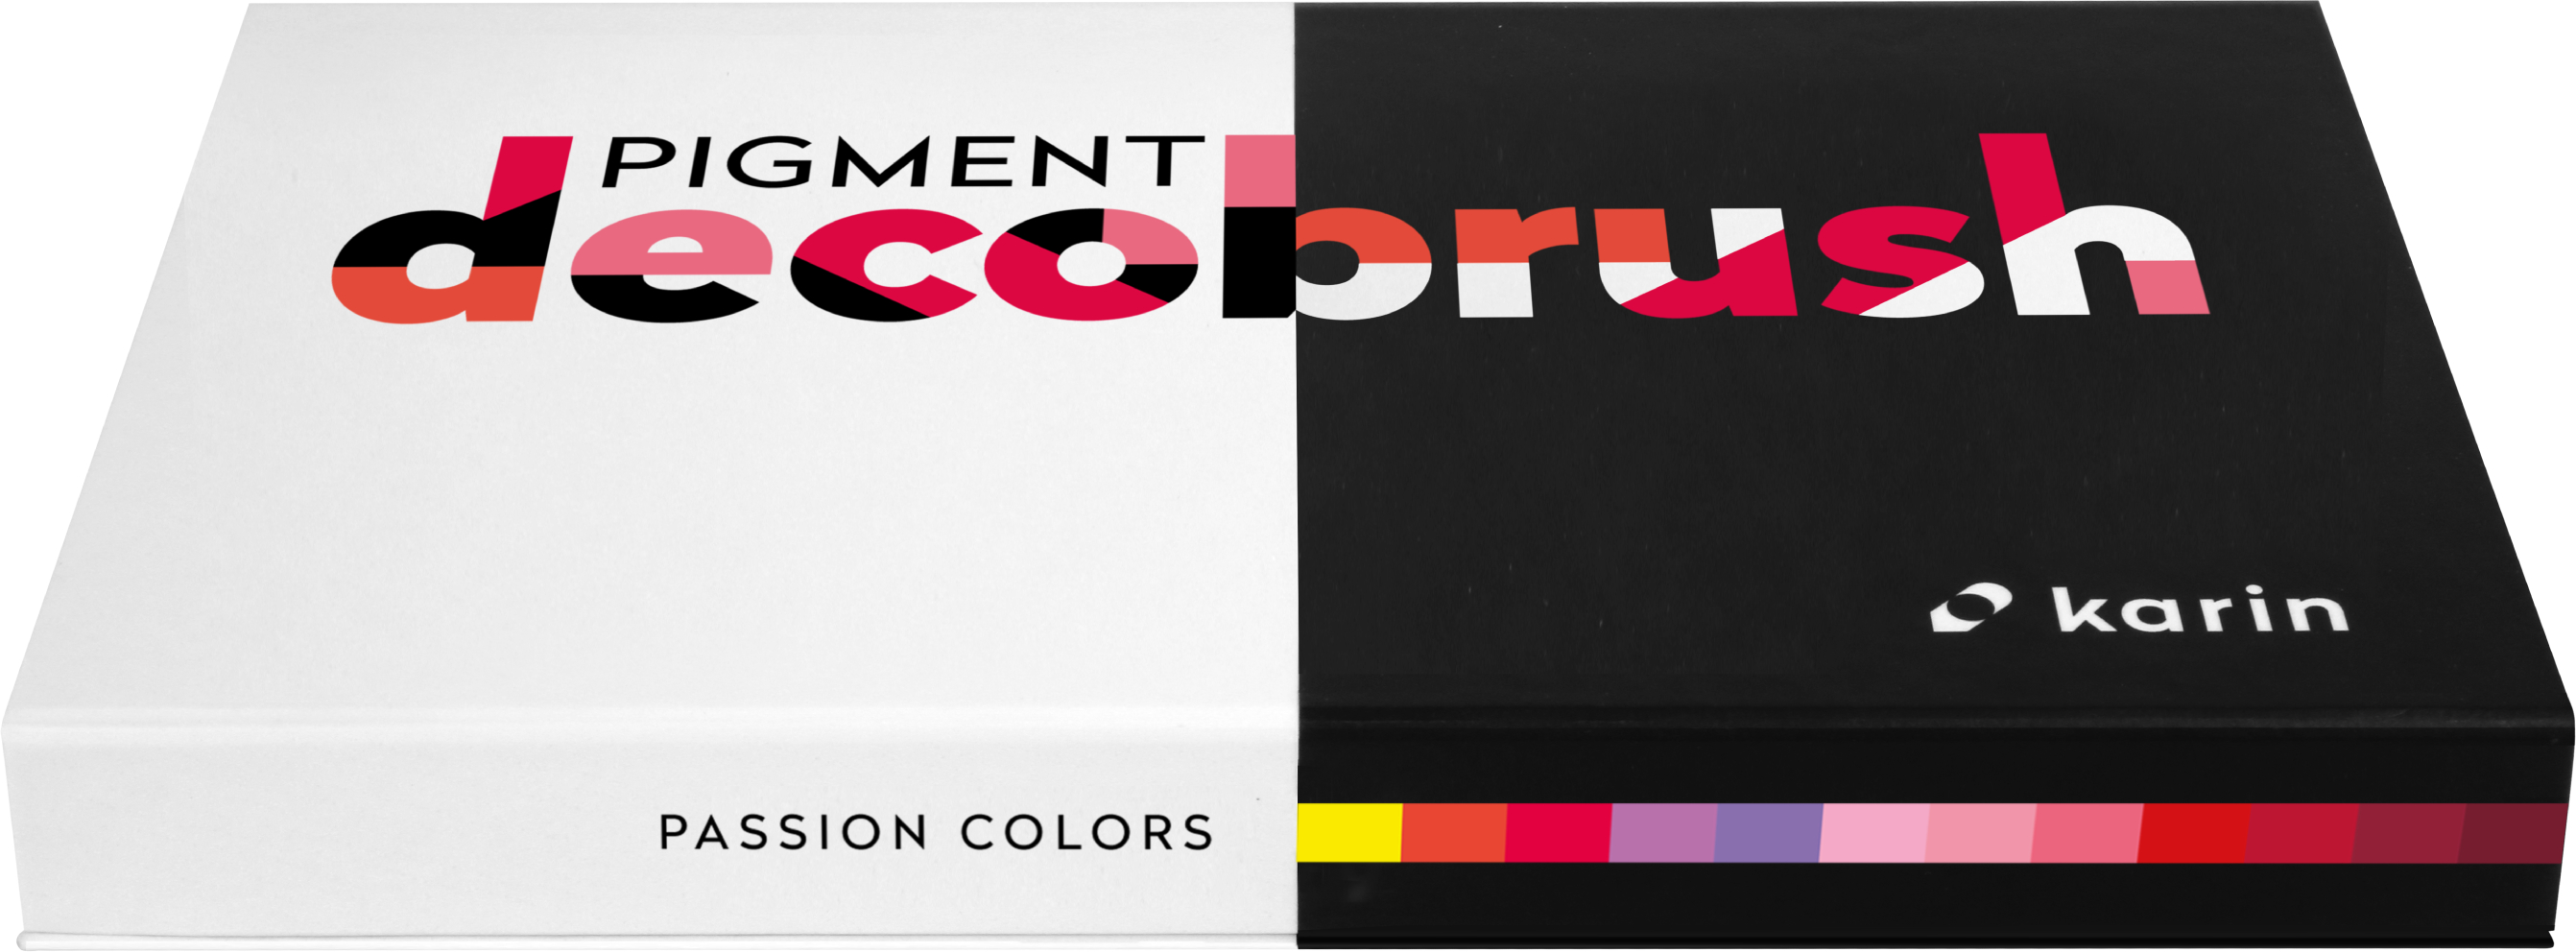 KARIN Pigment Deco Brush 29C6 Passion Colors Set 12 couleurs